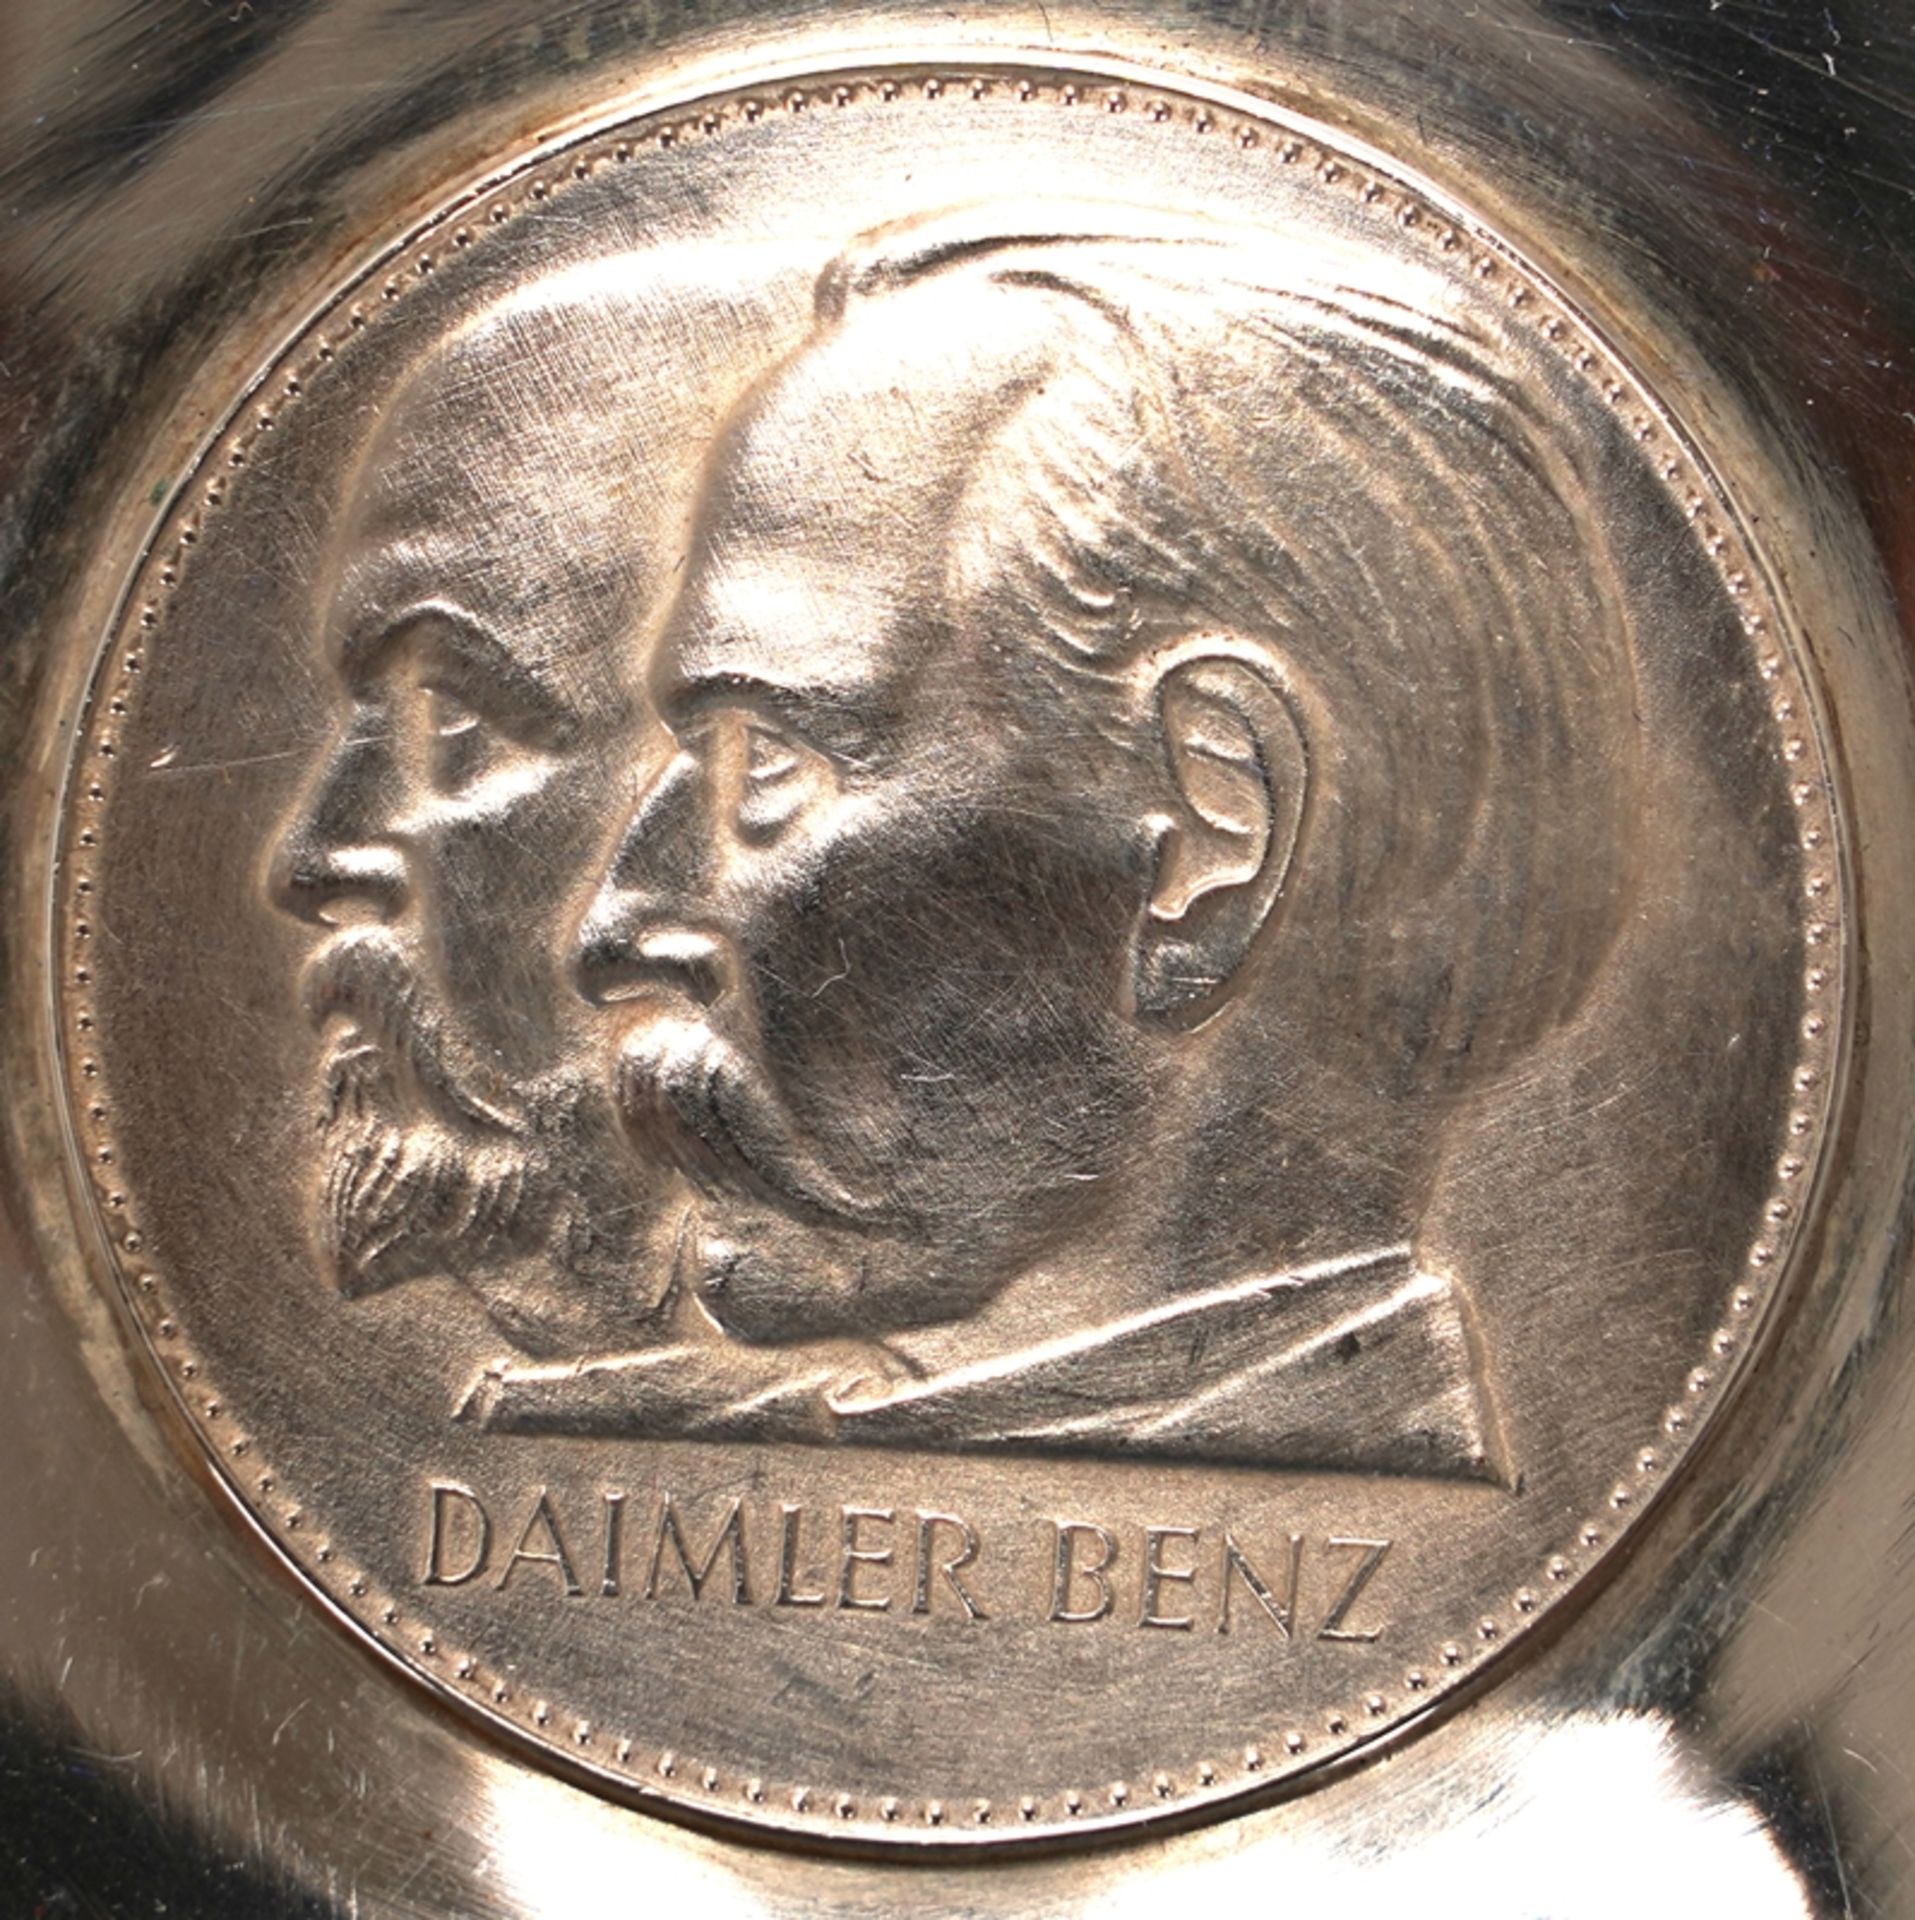 Zwei Daimler Benz Medaillen | Two Daimler Benz medal - Image 4 of 5